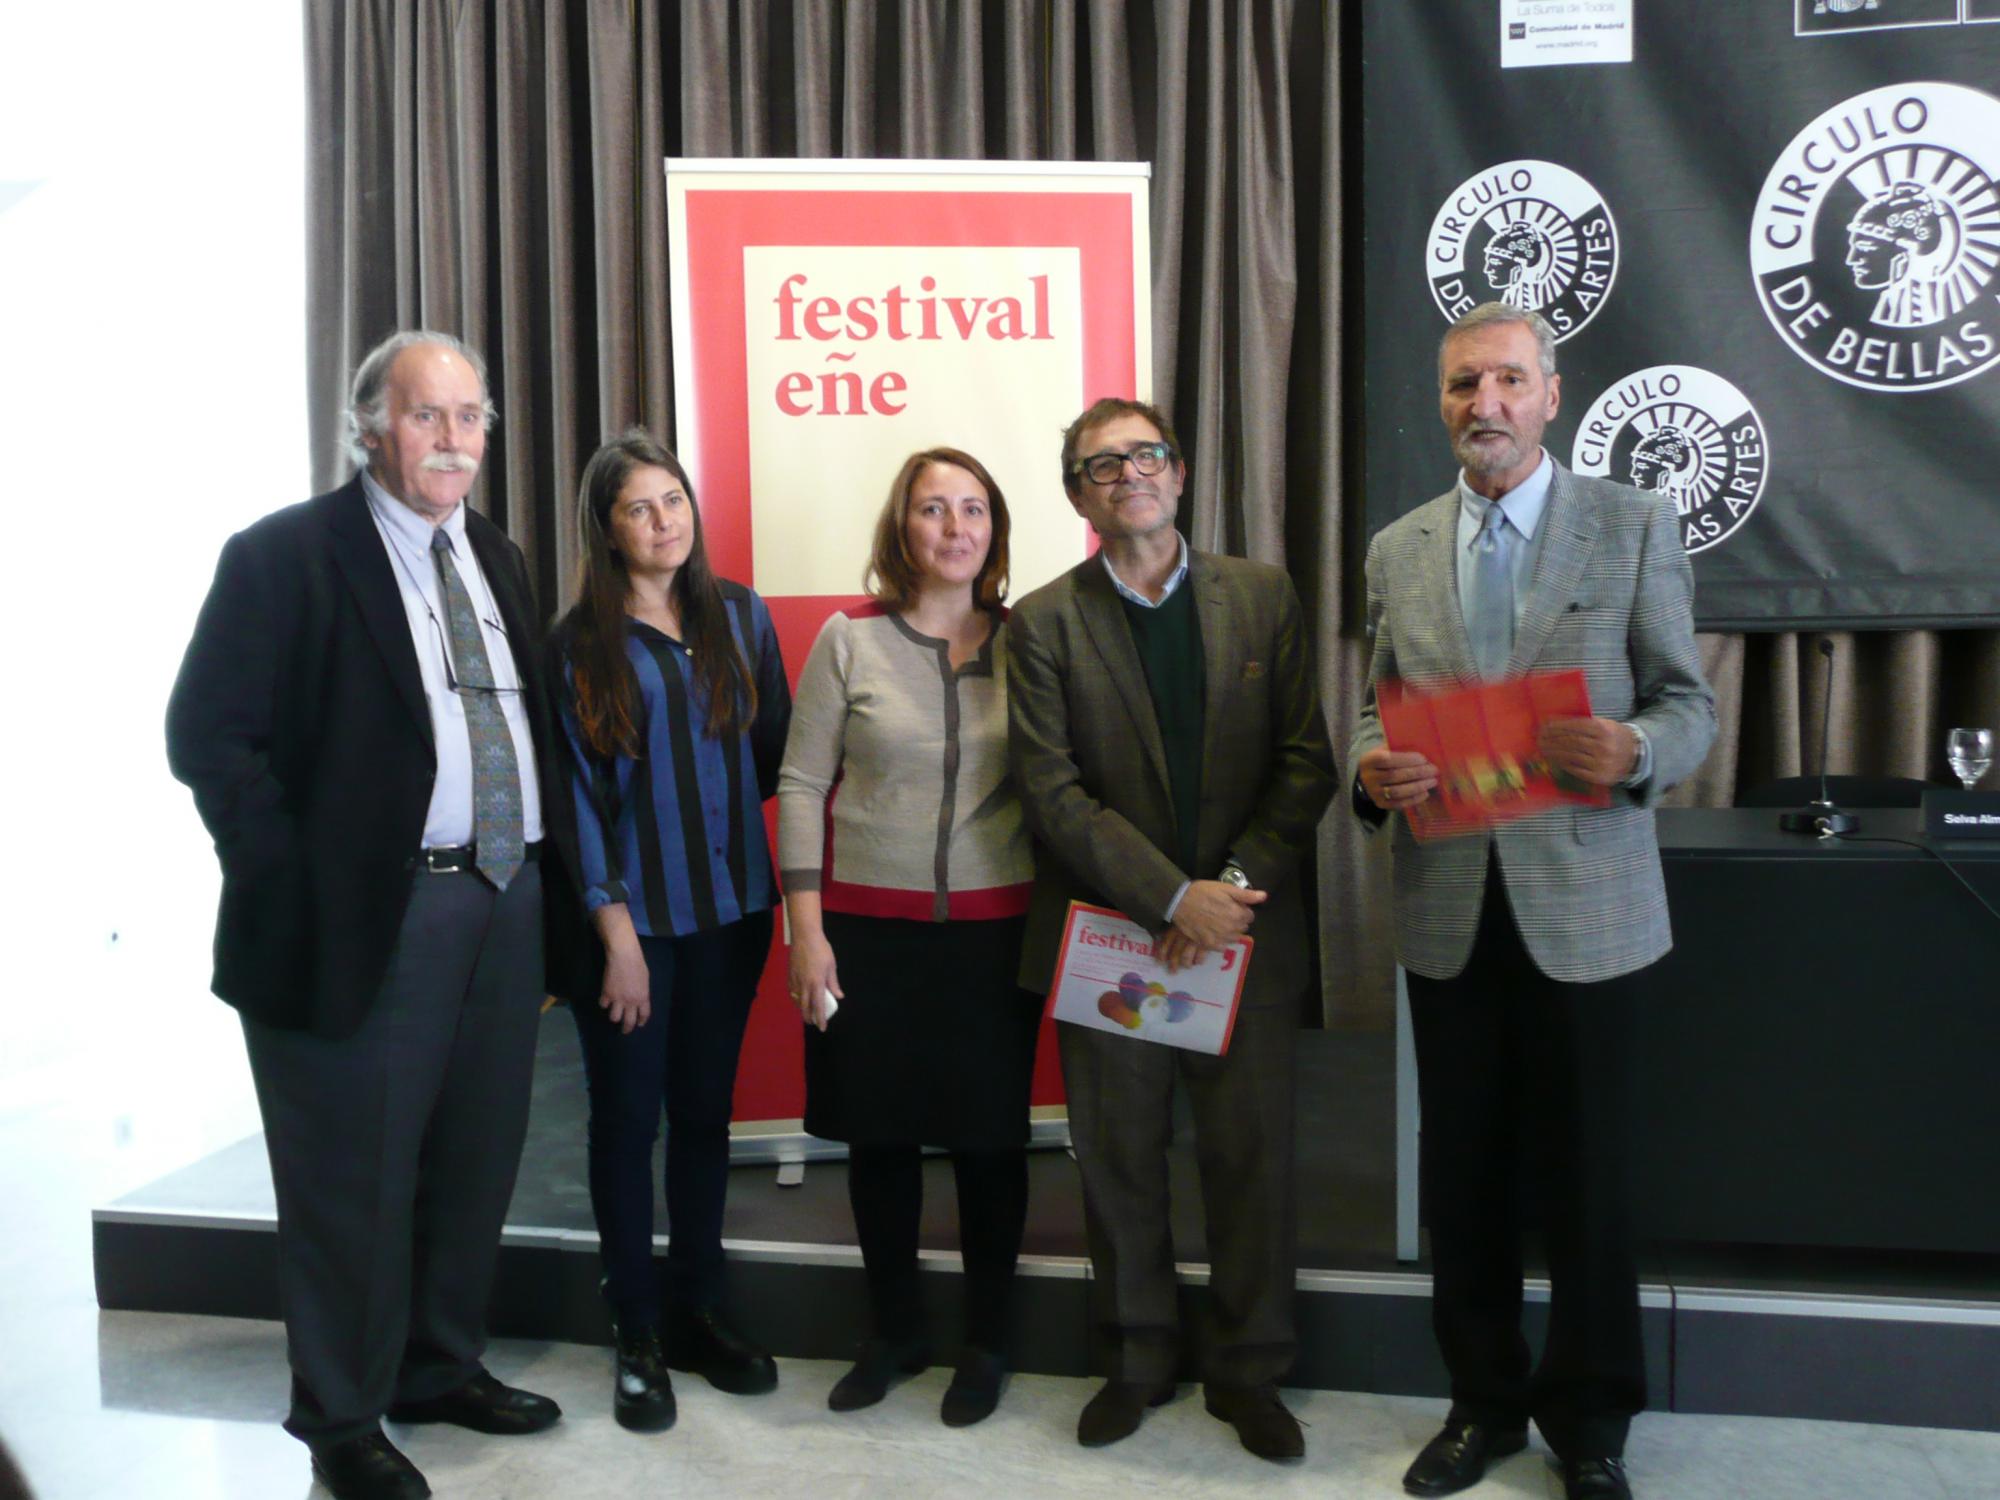 Hoy comienza la Sexta Edición del Festival EÑE, la gran fiesta de la literatura española